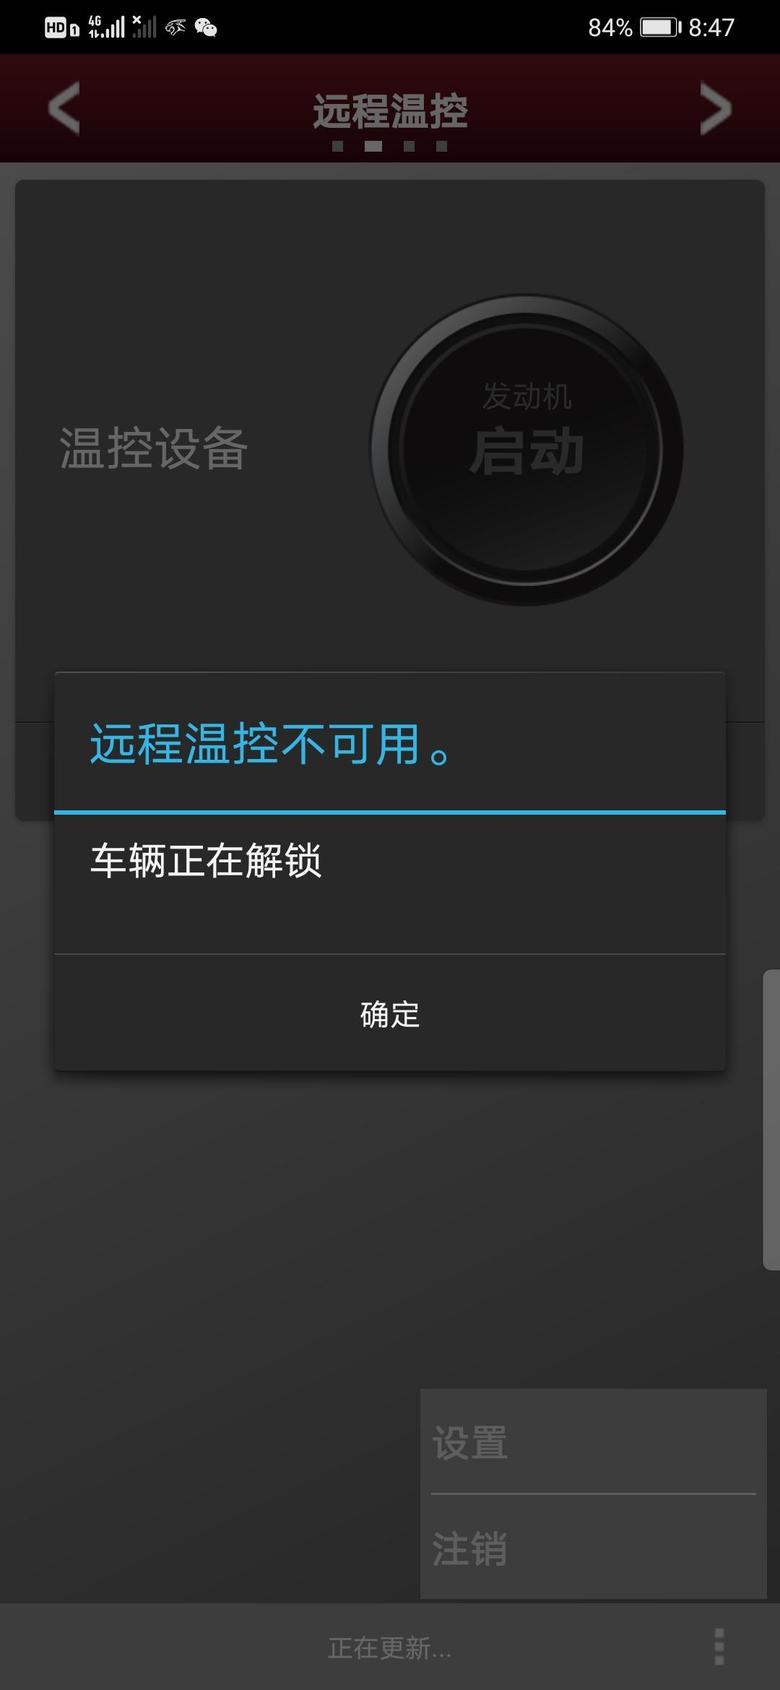 捷豹xel App显示远程温控不能用，不能远程启动，求大神解